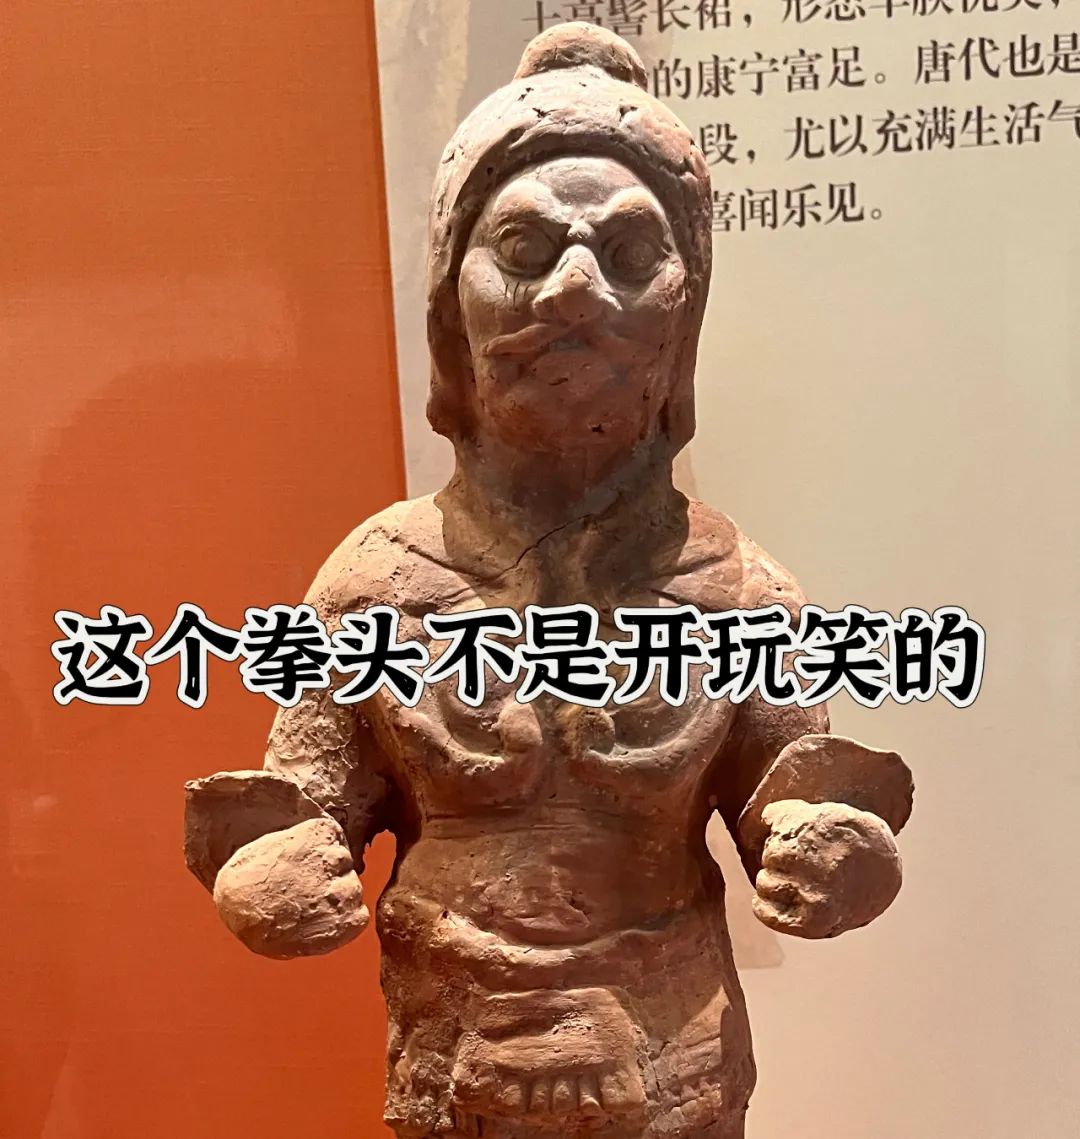  当襄阳市博物馆文物开始吵架，有没有人劝劝啊！